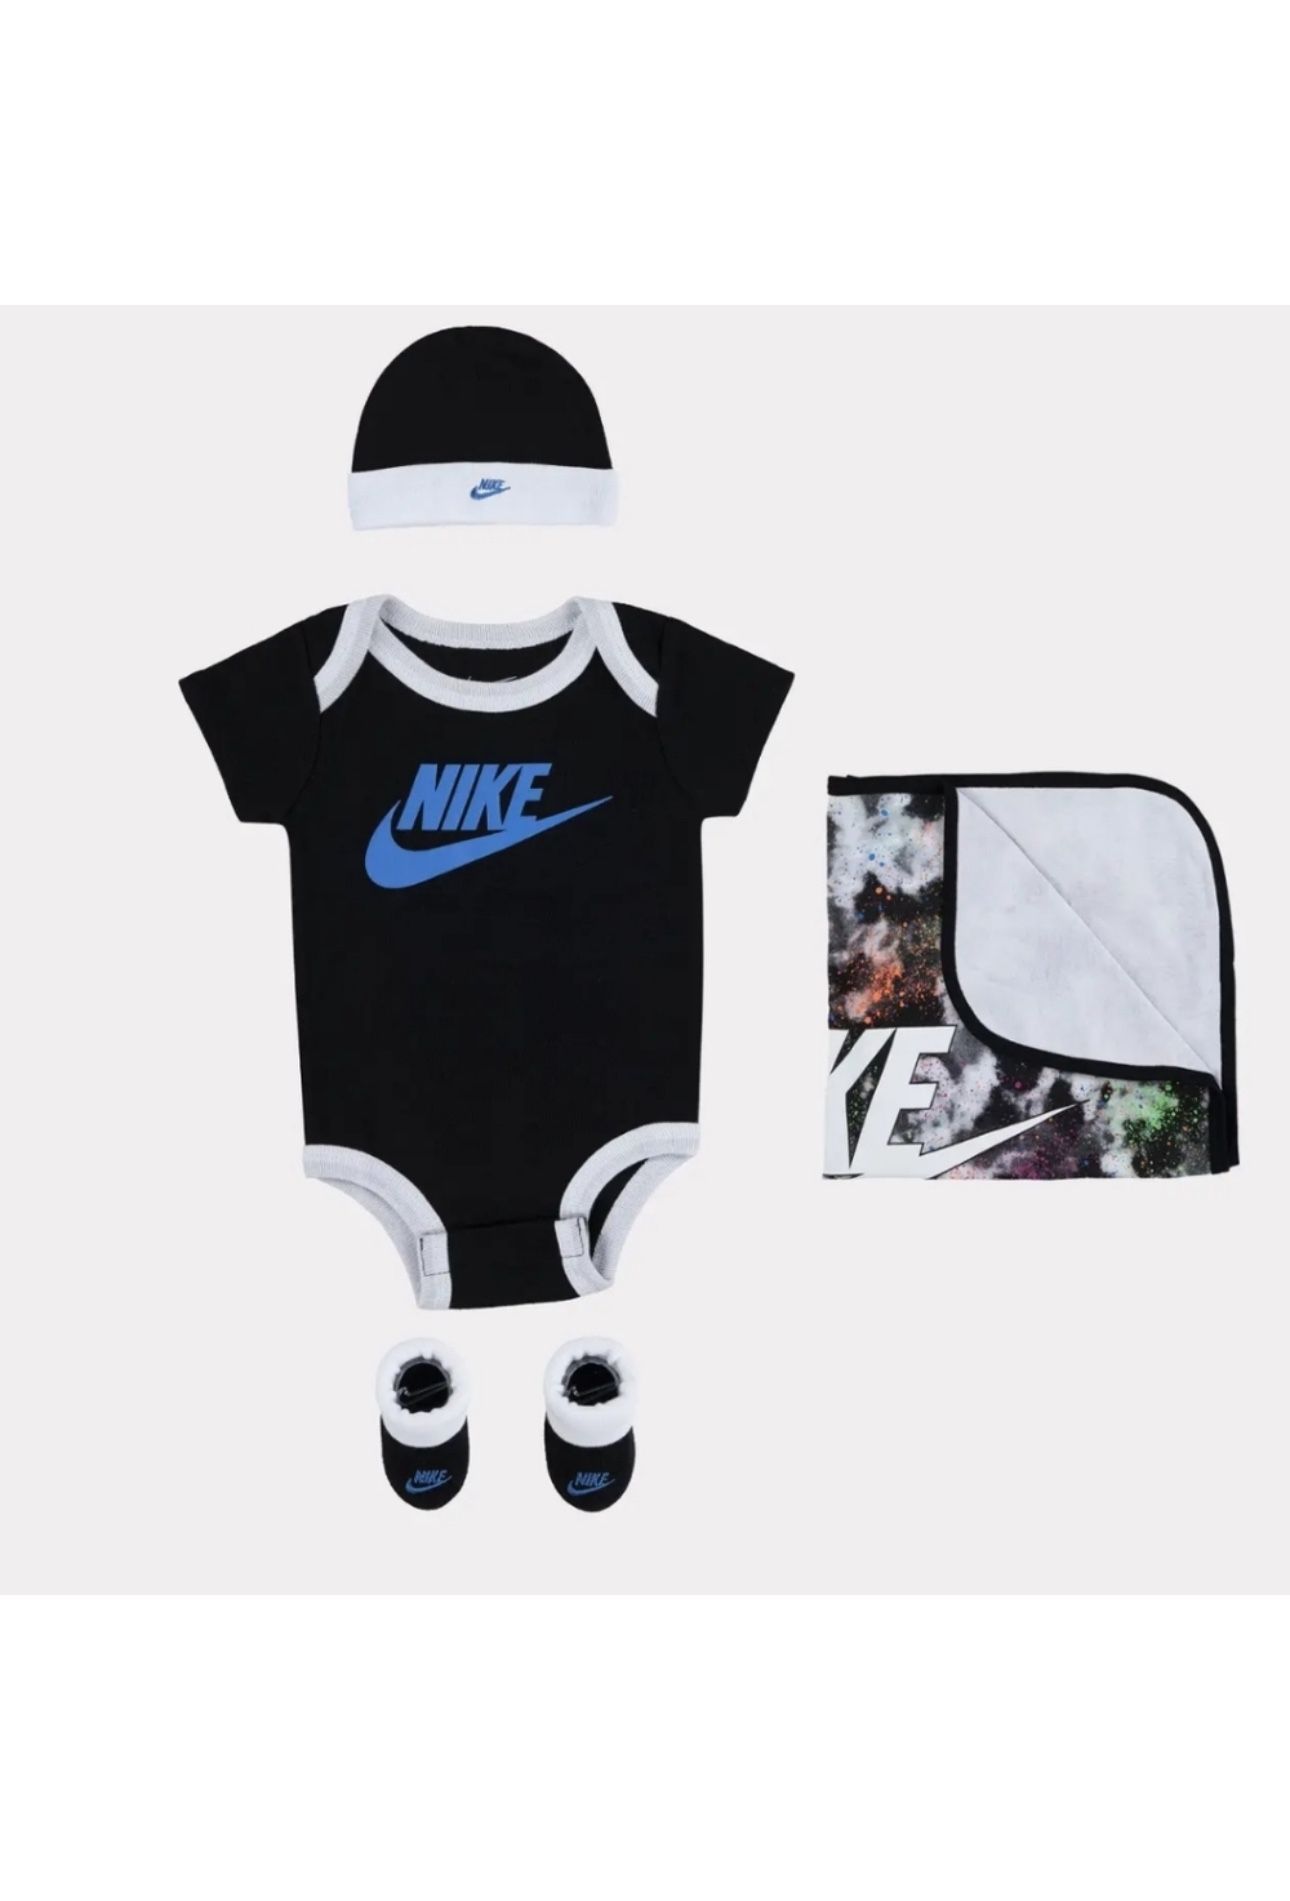 Nike 4-Piece Baby Set